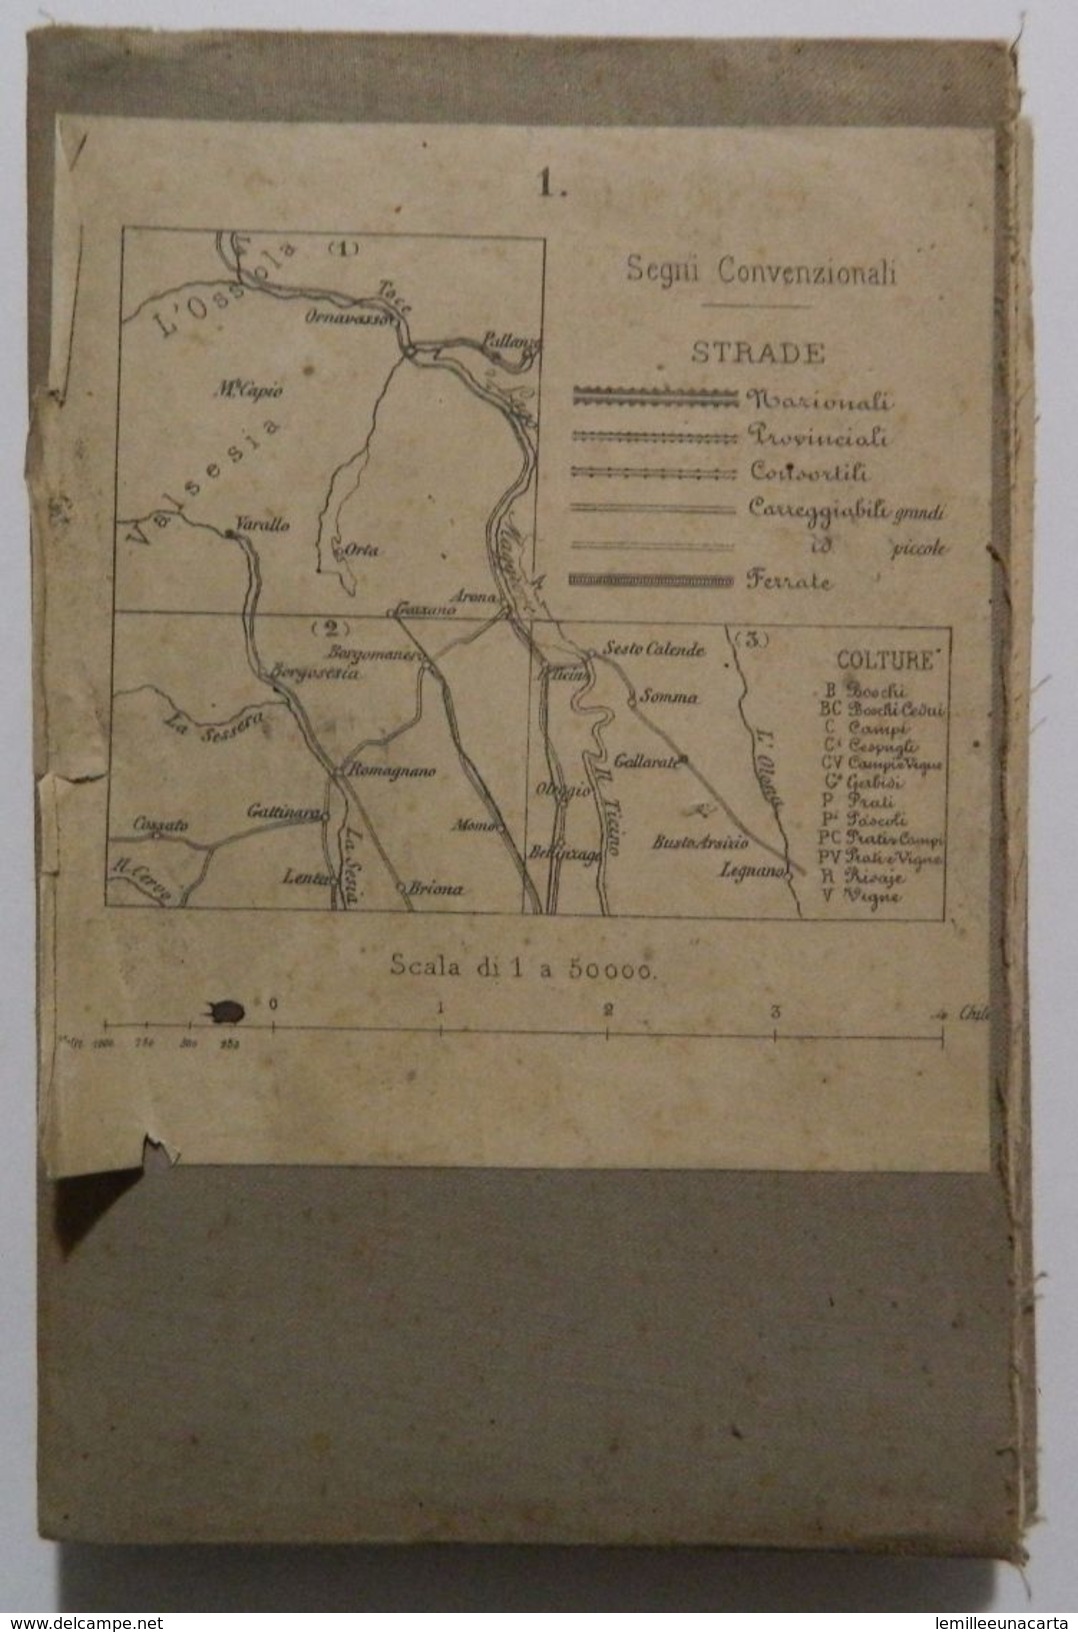 Mappa Su Tela _ PIEMONTE SETTENTRIONALE _ LAGO MAGGIORE E D'ORTA, VARALLO, OMEGNA, ARONA _ Scala 1 : 50.000 _datata 1855 - Carte Topografiche